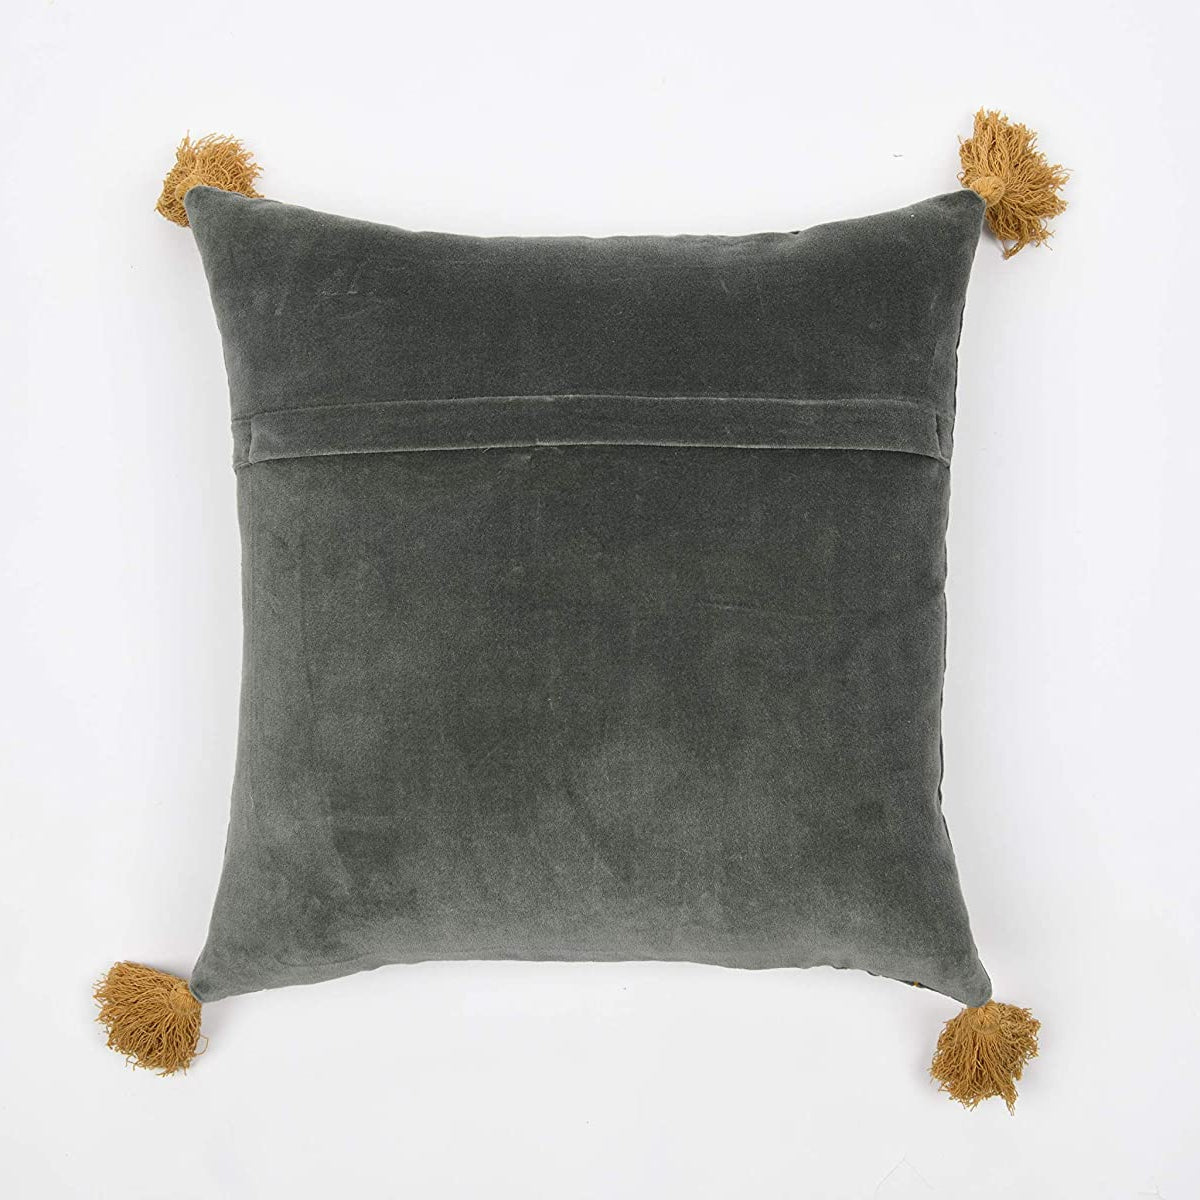 Tassels Cushion Cover 50*50 cm Beige Pillow Cover Handmade Boho rustic decor cream Moroccan Cushions Hand Tufted Cushion